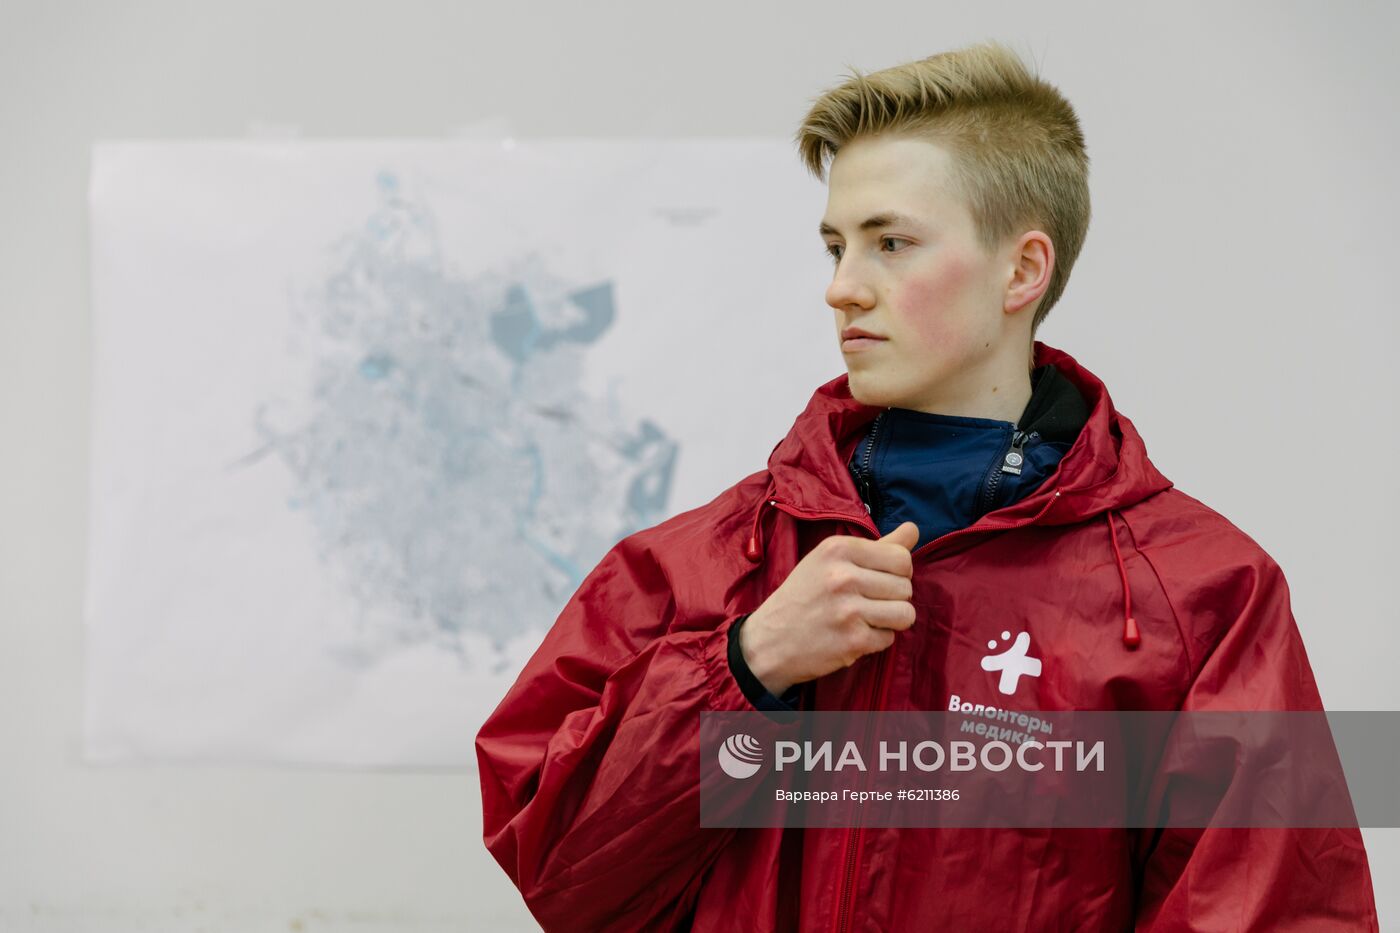 Работа волонтерских центров в городах России